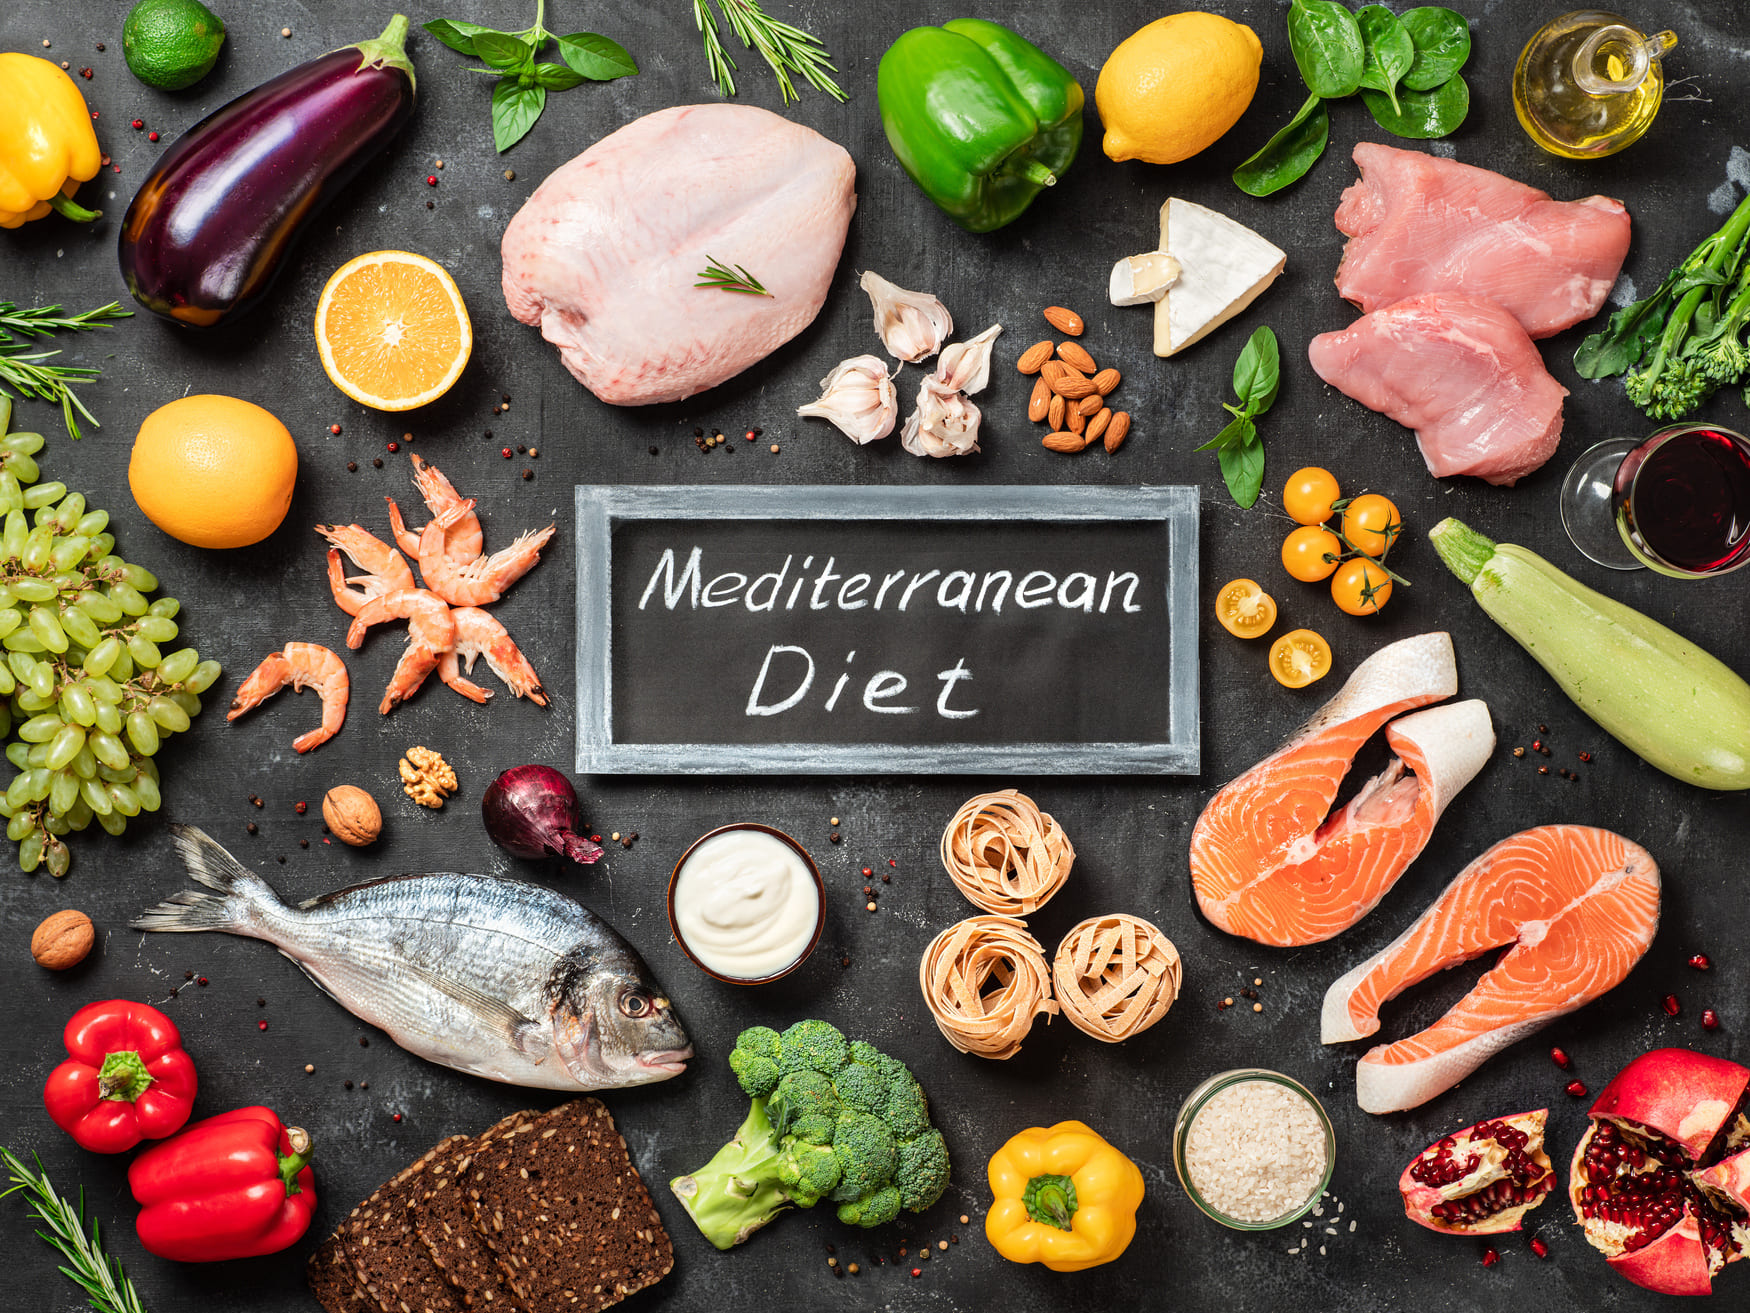 The Mediterranean Diet for Heart Health